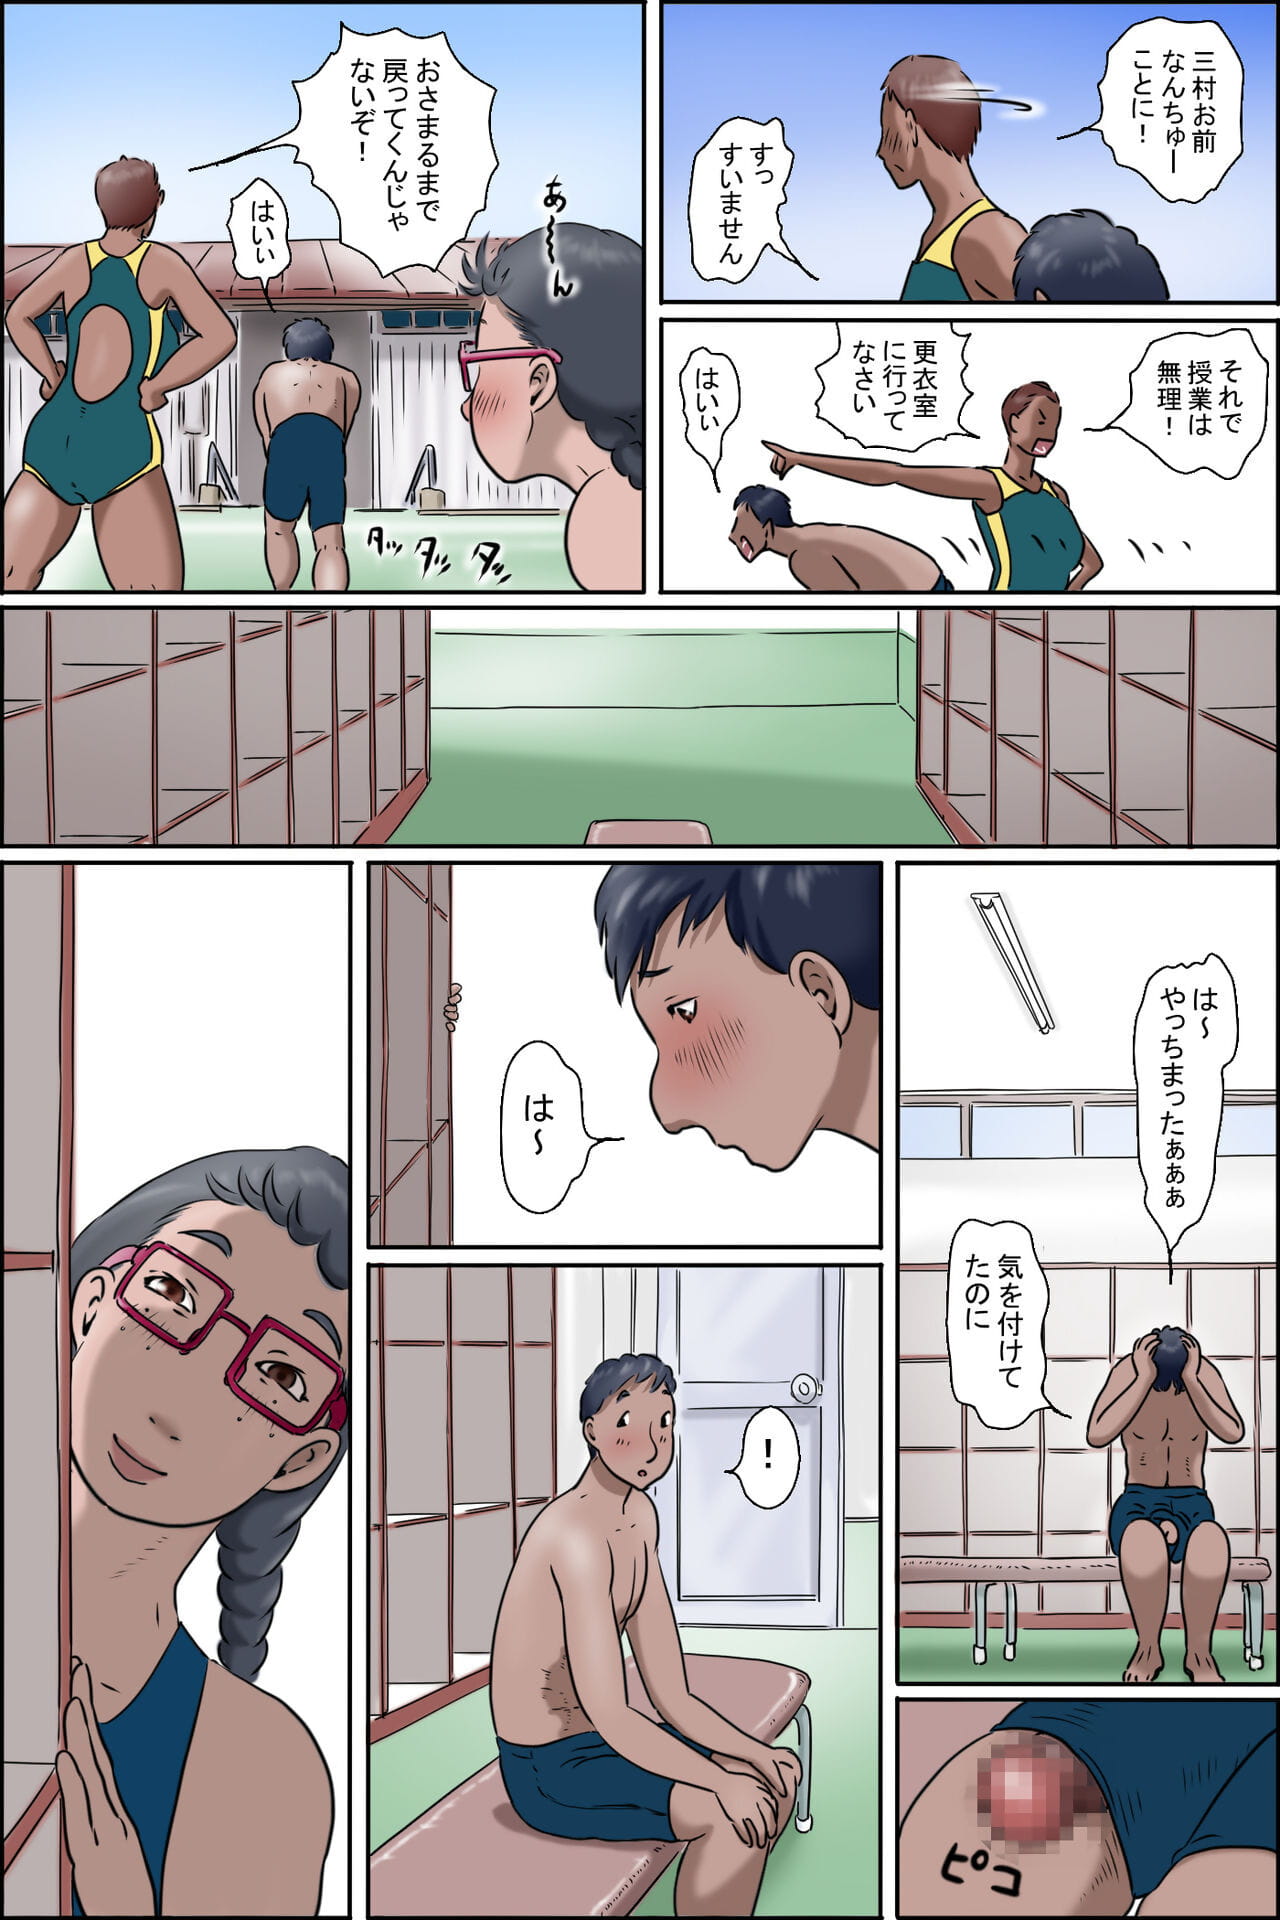 죄송 ni wa   카  암탉 page 1